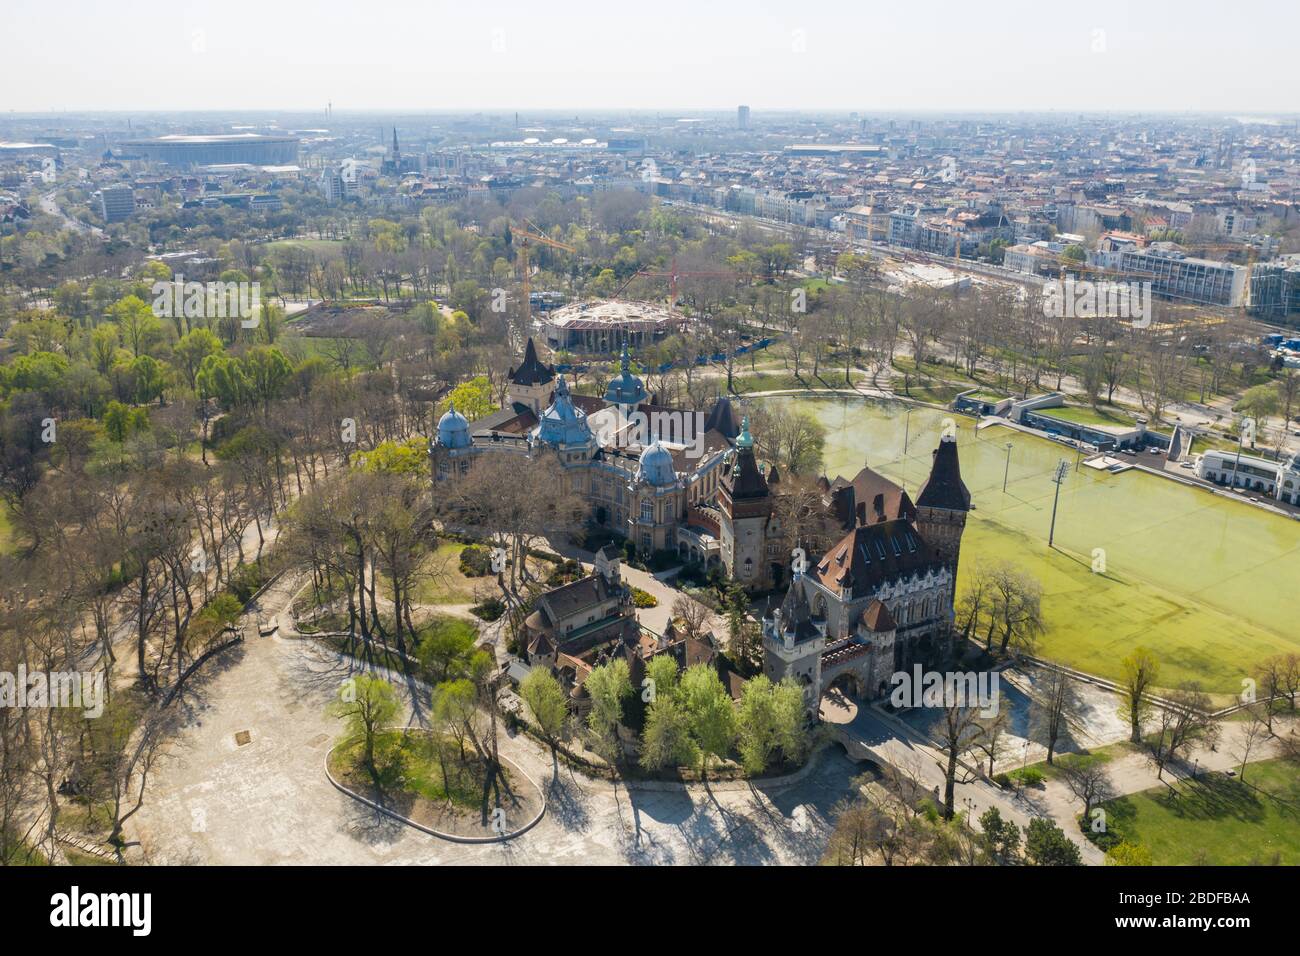 Destinazione turistica vuota a Budapest, Ungheria. Il City Park è normalmente pieno, ora deserte. Castello di Vajdahunyad, Piazza degli Eroi. Coronavirus. Foto Stock